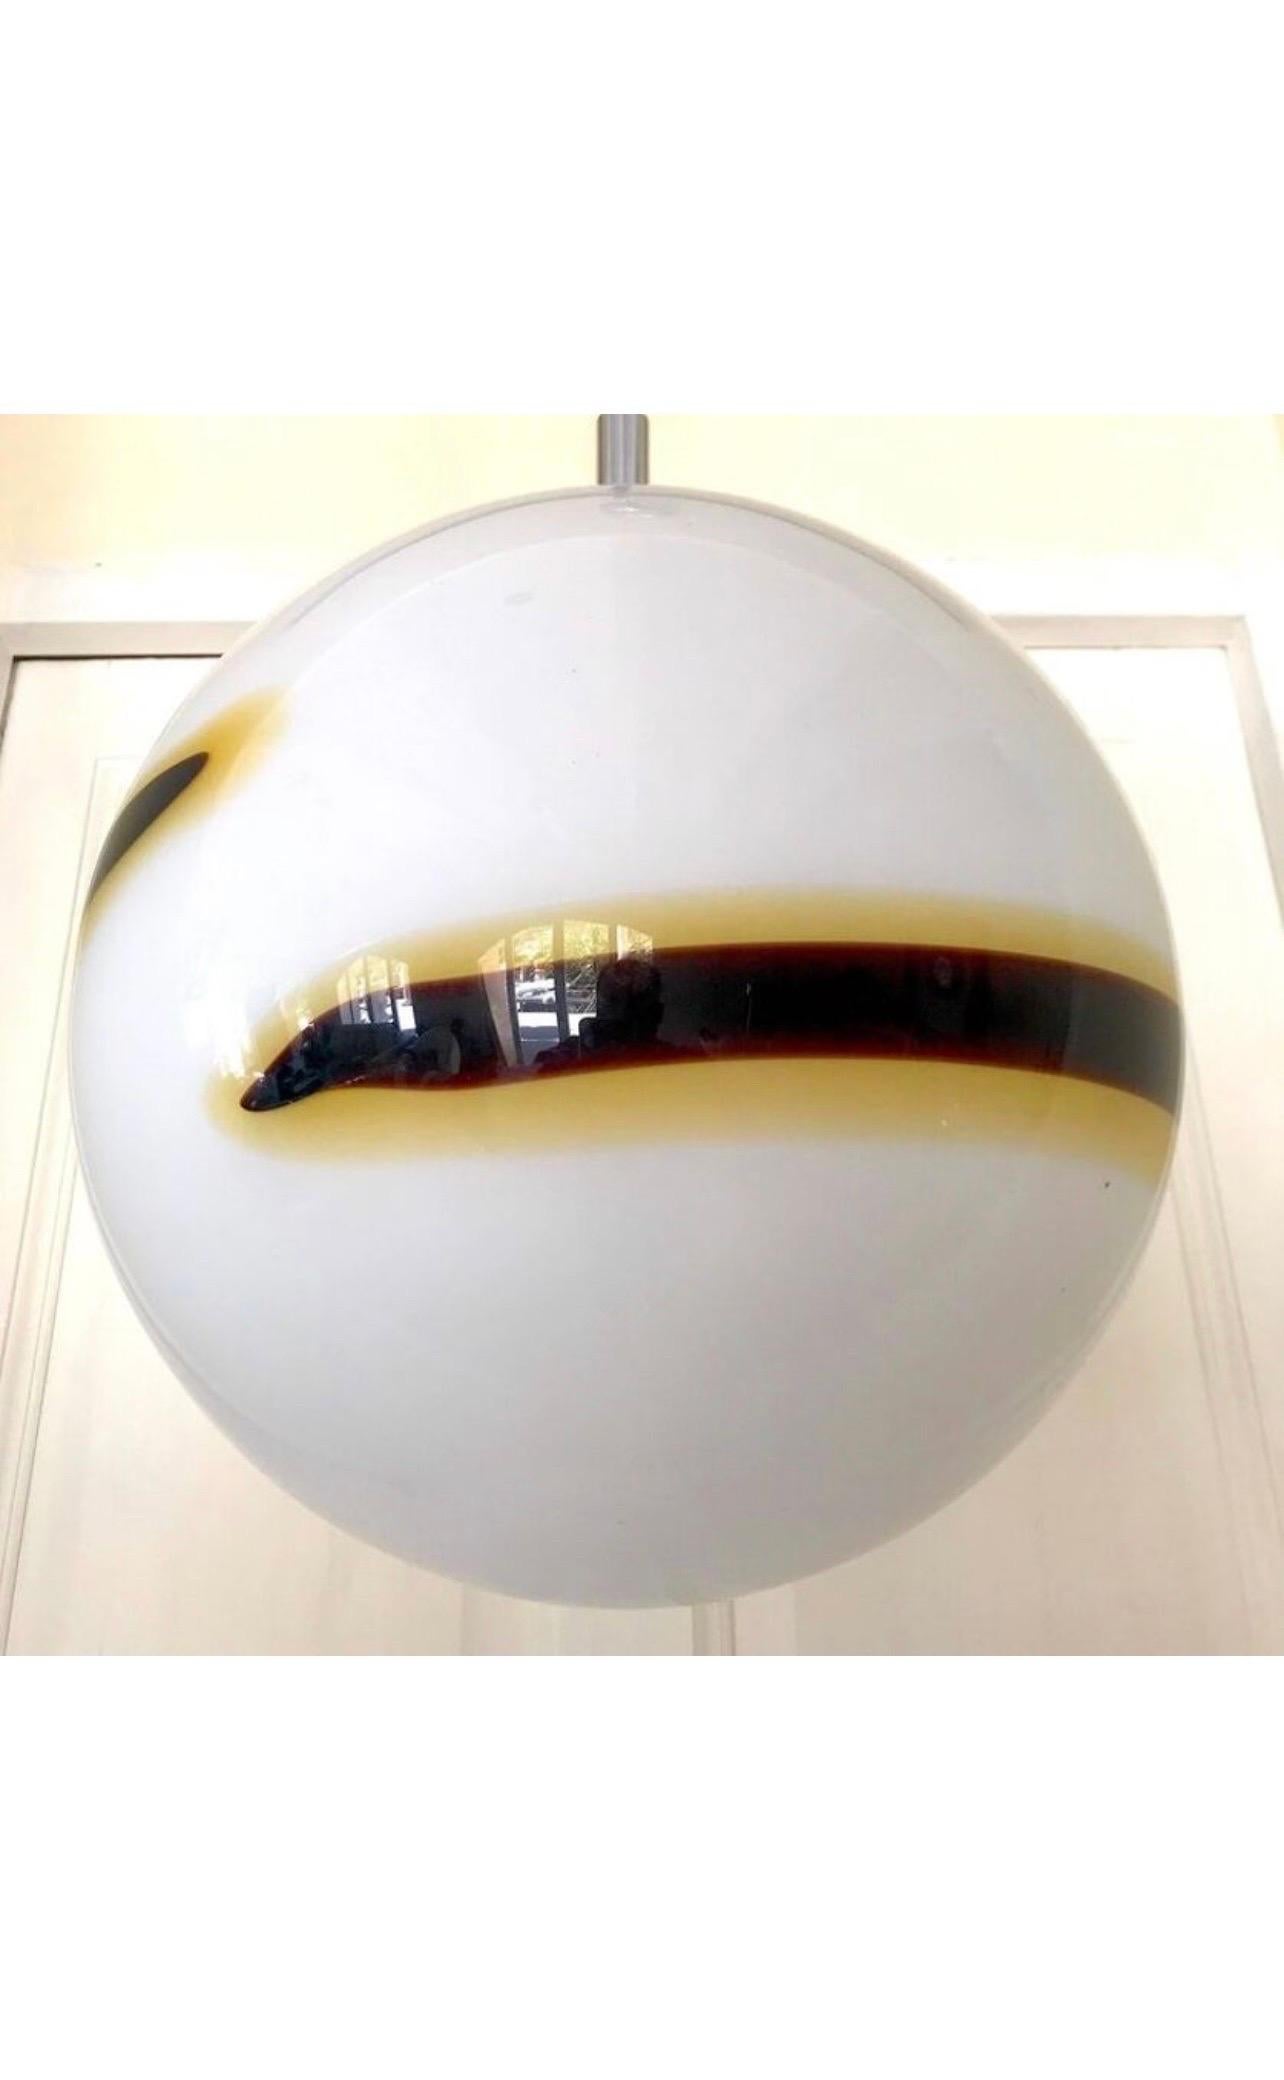 Exceptionnel Globe Vistosi, bicolore en verre de Murano avec structure chromée. Le design et la qualité du verre font de cette pièce le meilleur du design italien. Ce globe unique de Vistosi en verre de Murano est exceptionnel.

 Ce verre d'art